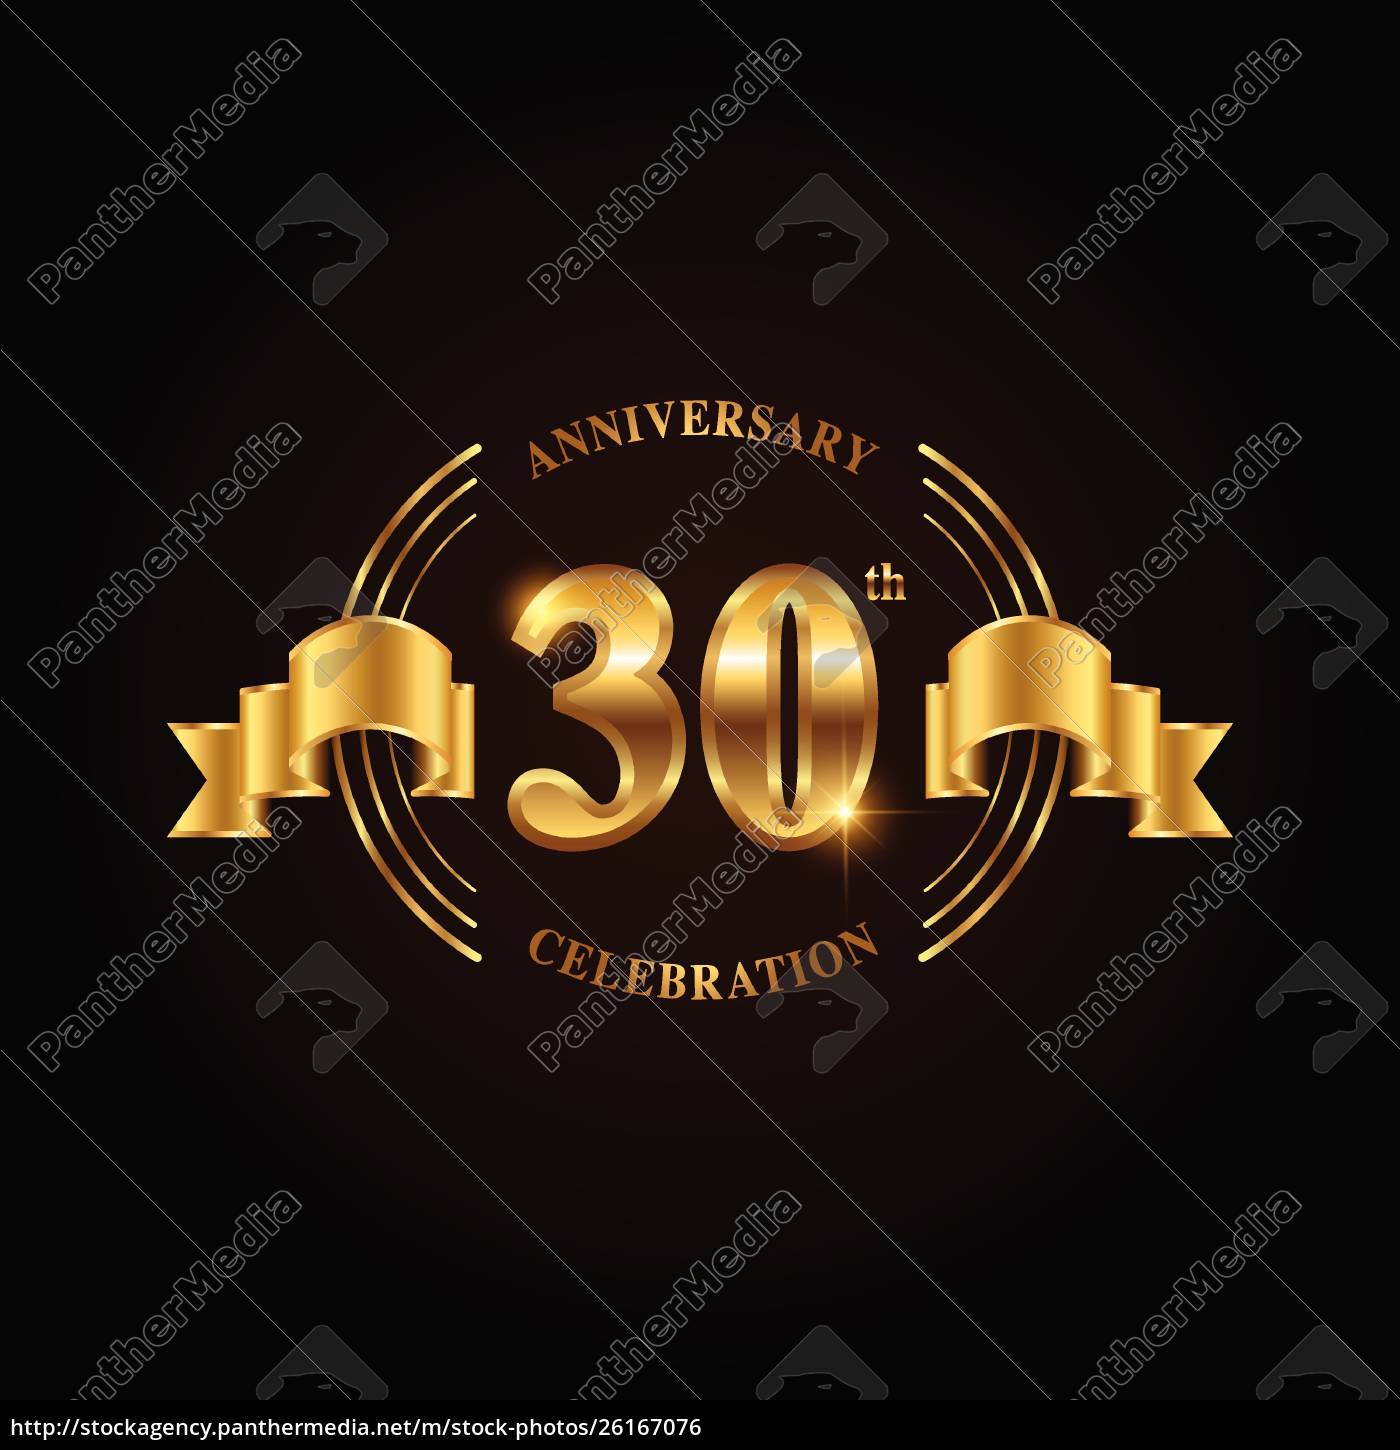 Diseño de celebración de aniversario de 30 años. Logotipo del 30